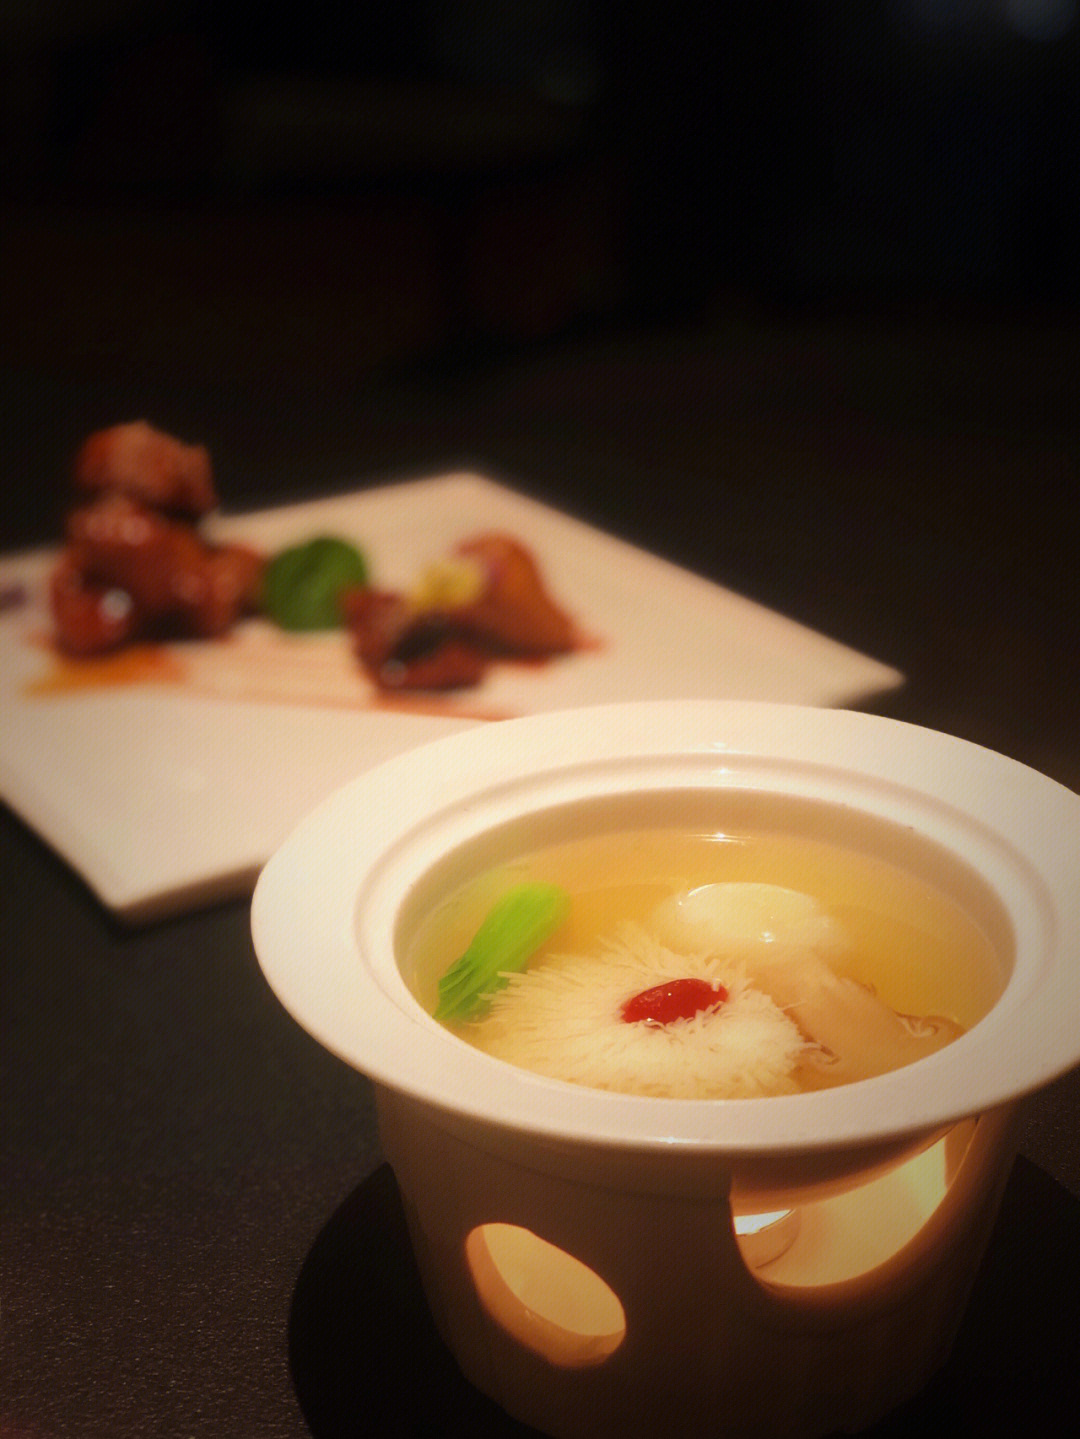 很浓郁,沙蒜,就是海葵,福州常用来做酸辣汤,这种做法确